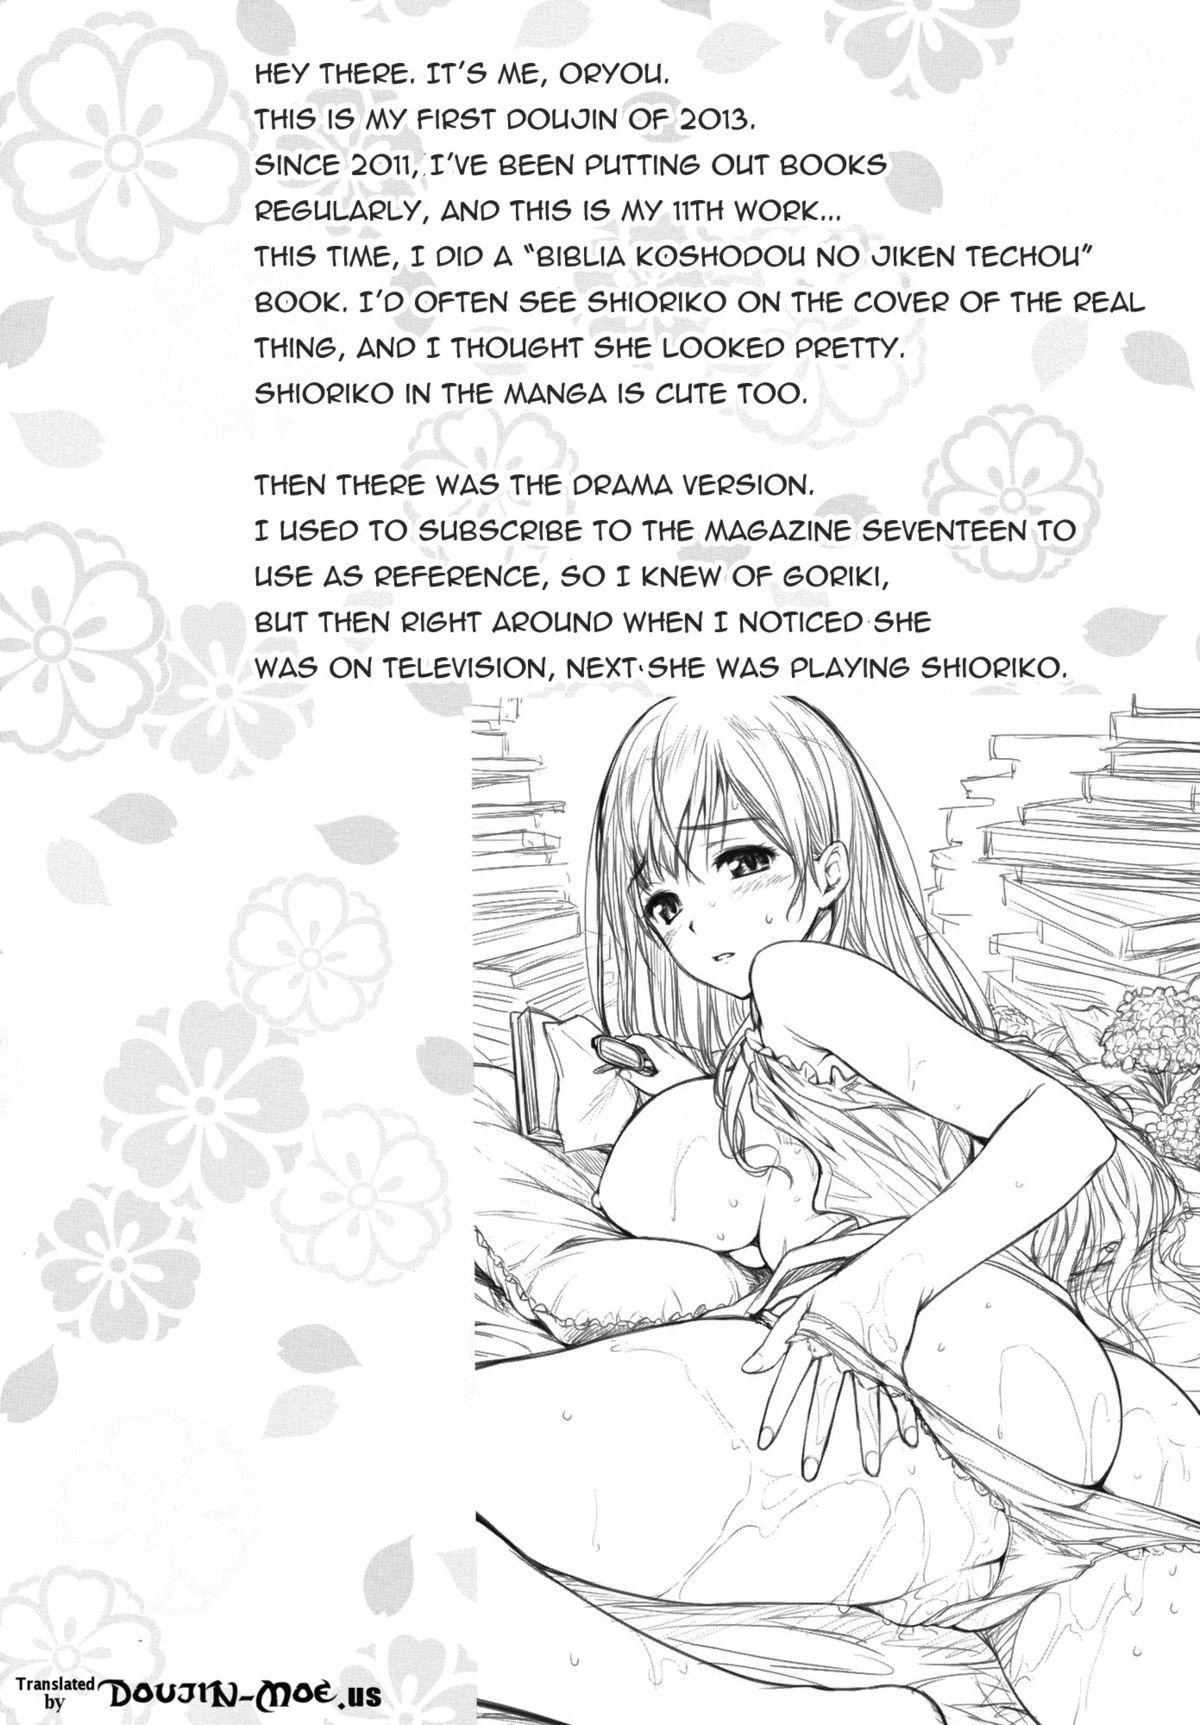 (SC58) [P:P (Oryou)] Shioriko-san no Kaijo Techou | Shioriko-san's Assistance Notebook (Biblia Koshodou no Jiken Techou) [English] {doujin-moe.us} 2